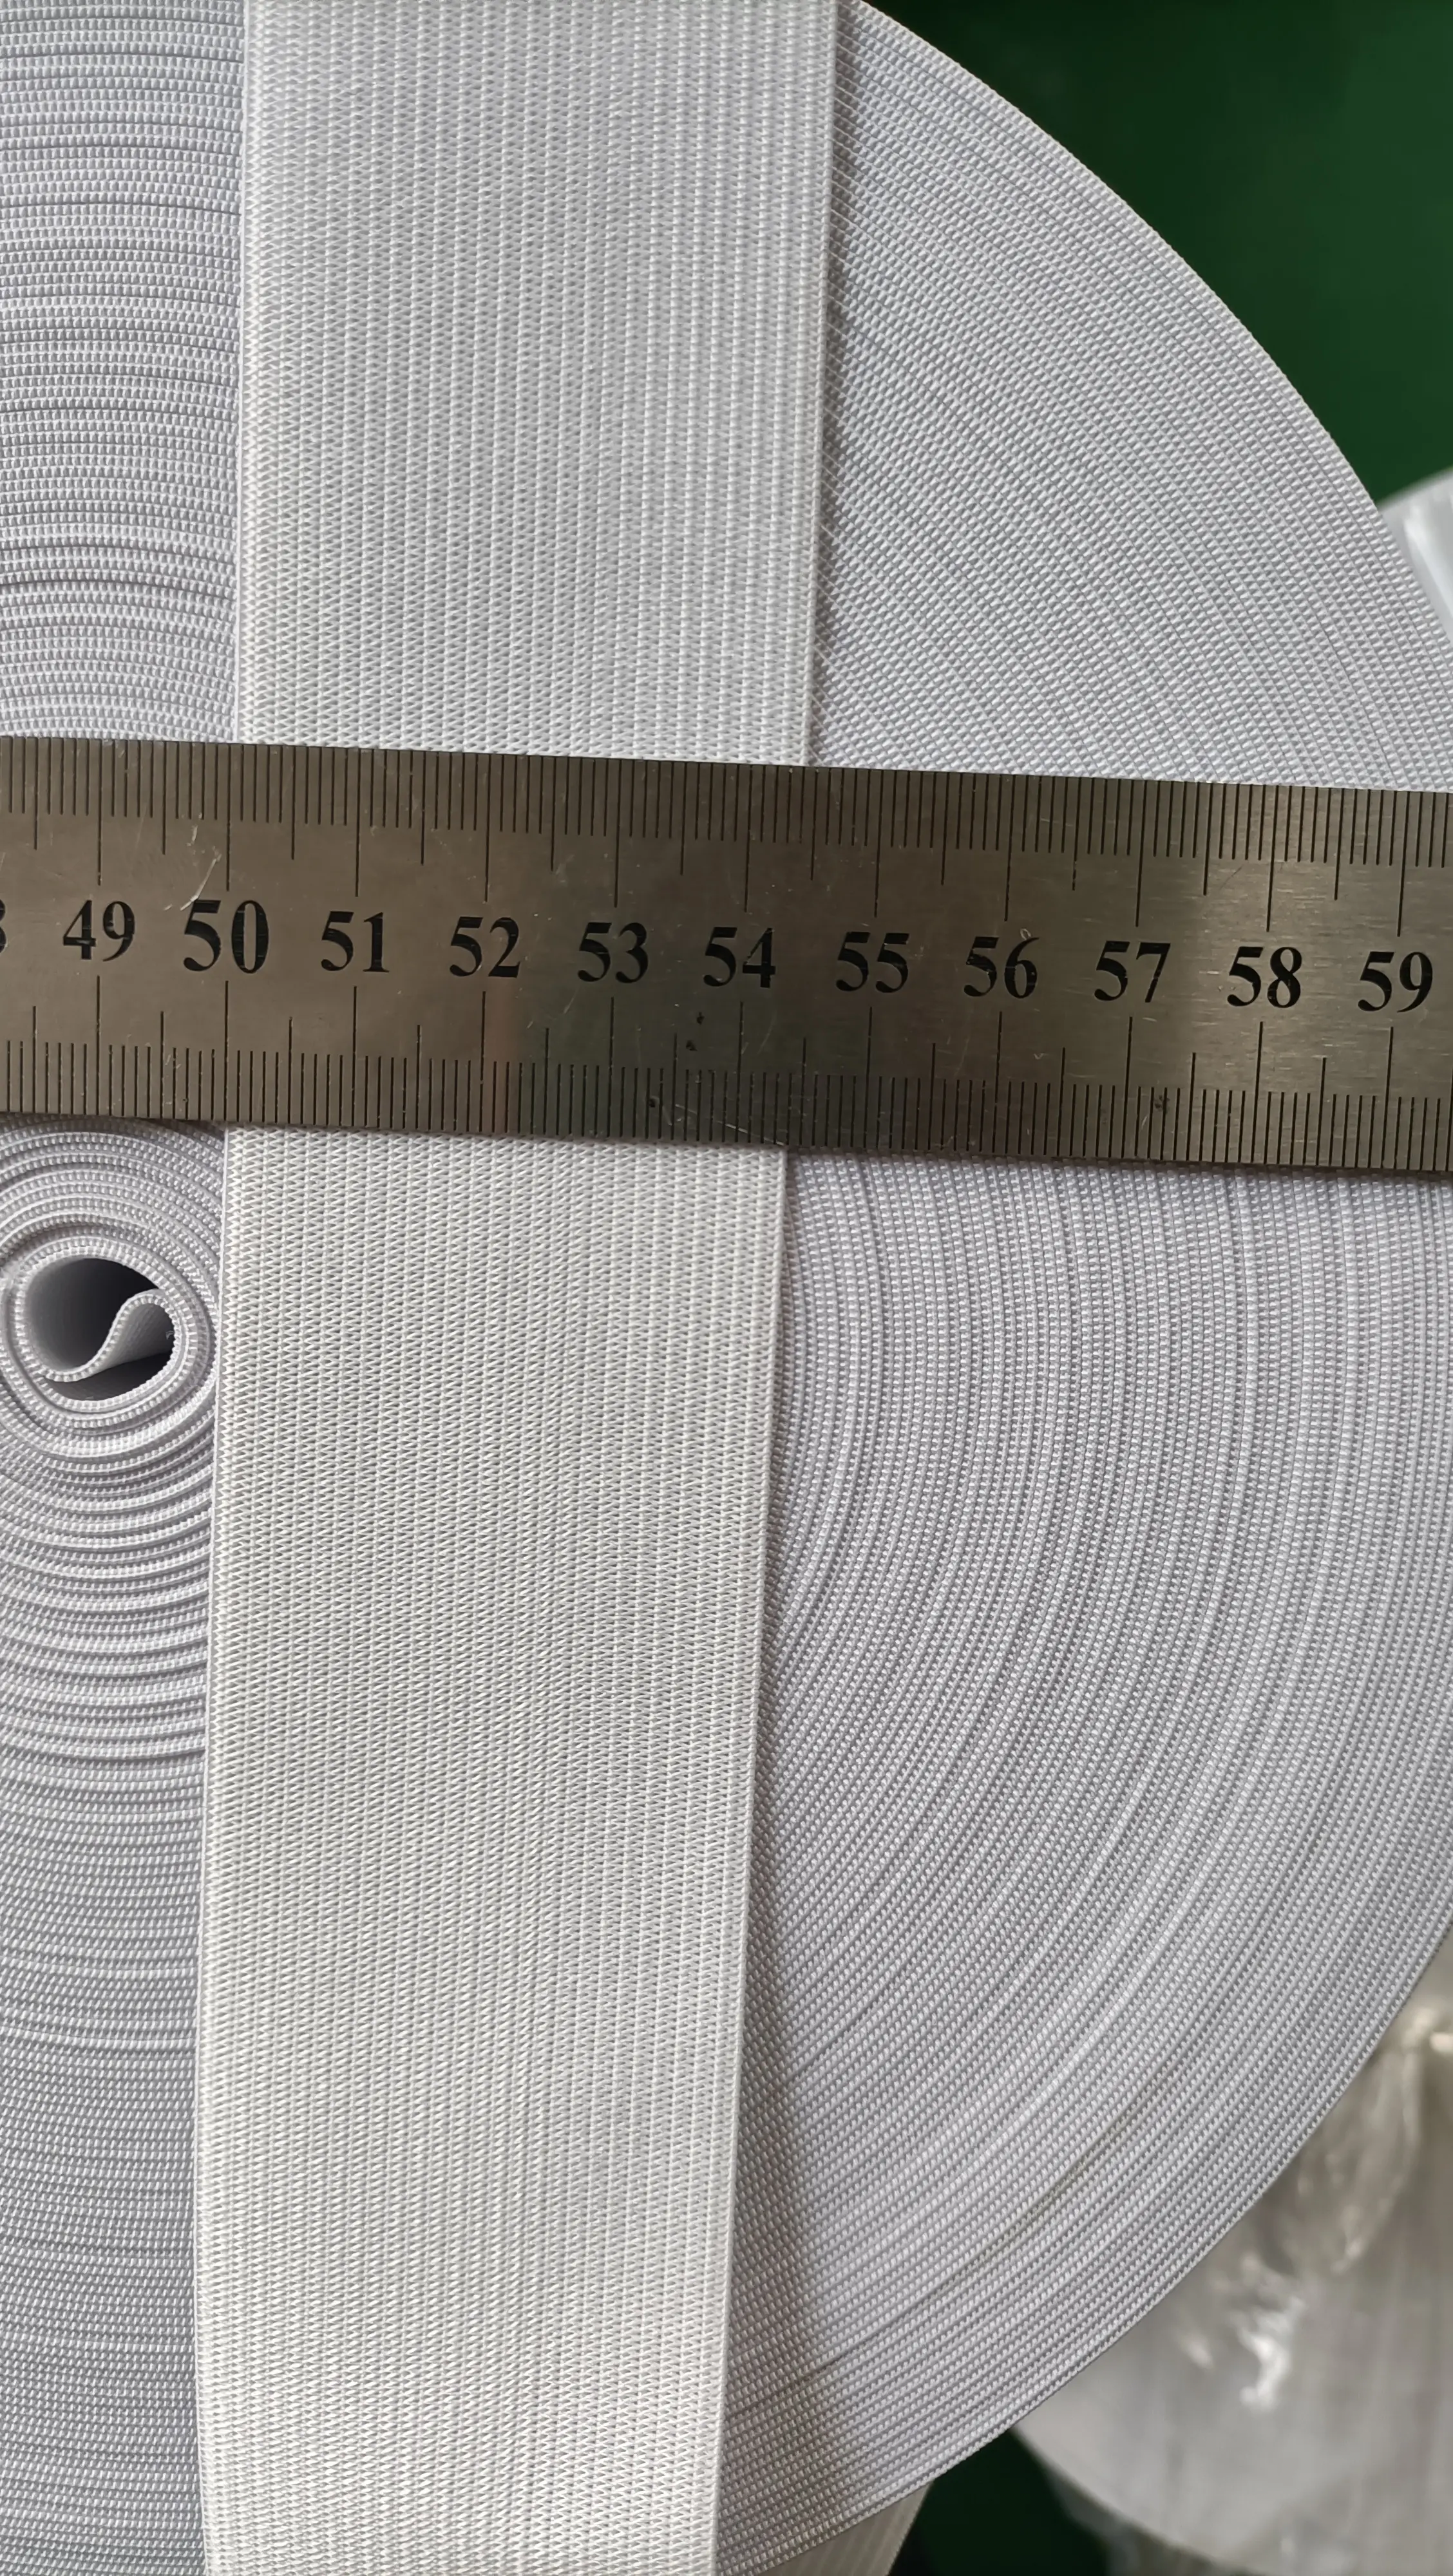 चौड़ाई 1/1.5/ 2/2.5/3/4/5cm सफेद/काले रंग का नरम बुनना लट लोचदार वेब बैंड के लिए सिलाई परिधान सामान